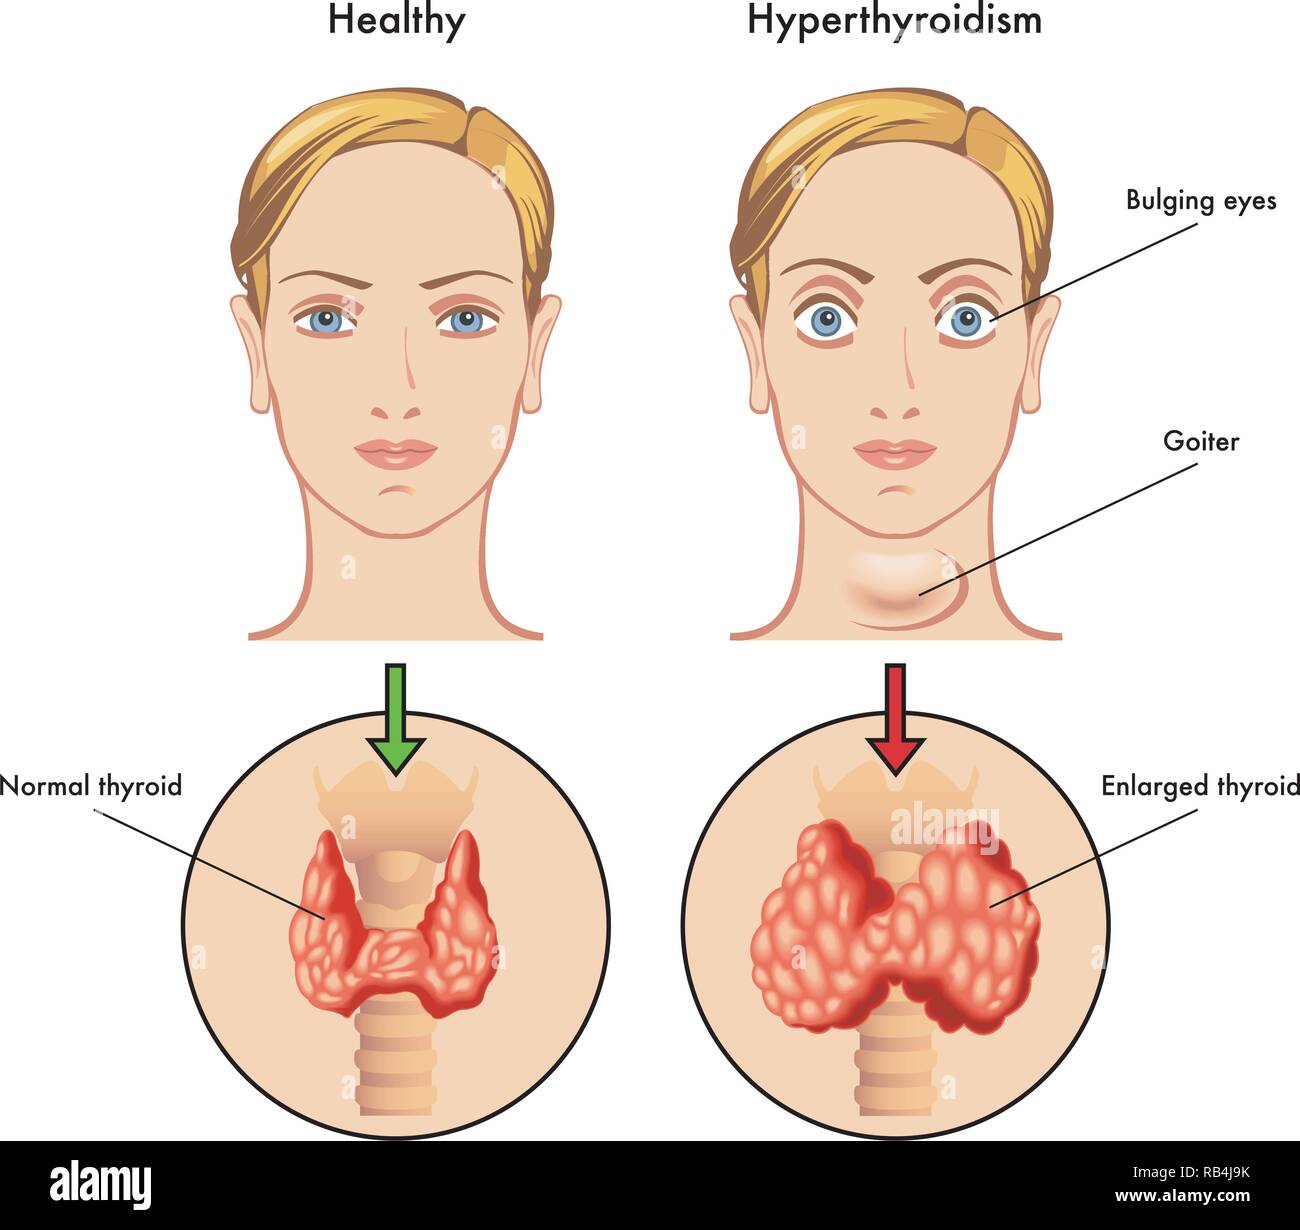 Illustrazione medica dei sintomi principali di ipertiroidismo Illustrazione Vettoriale